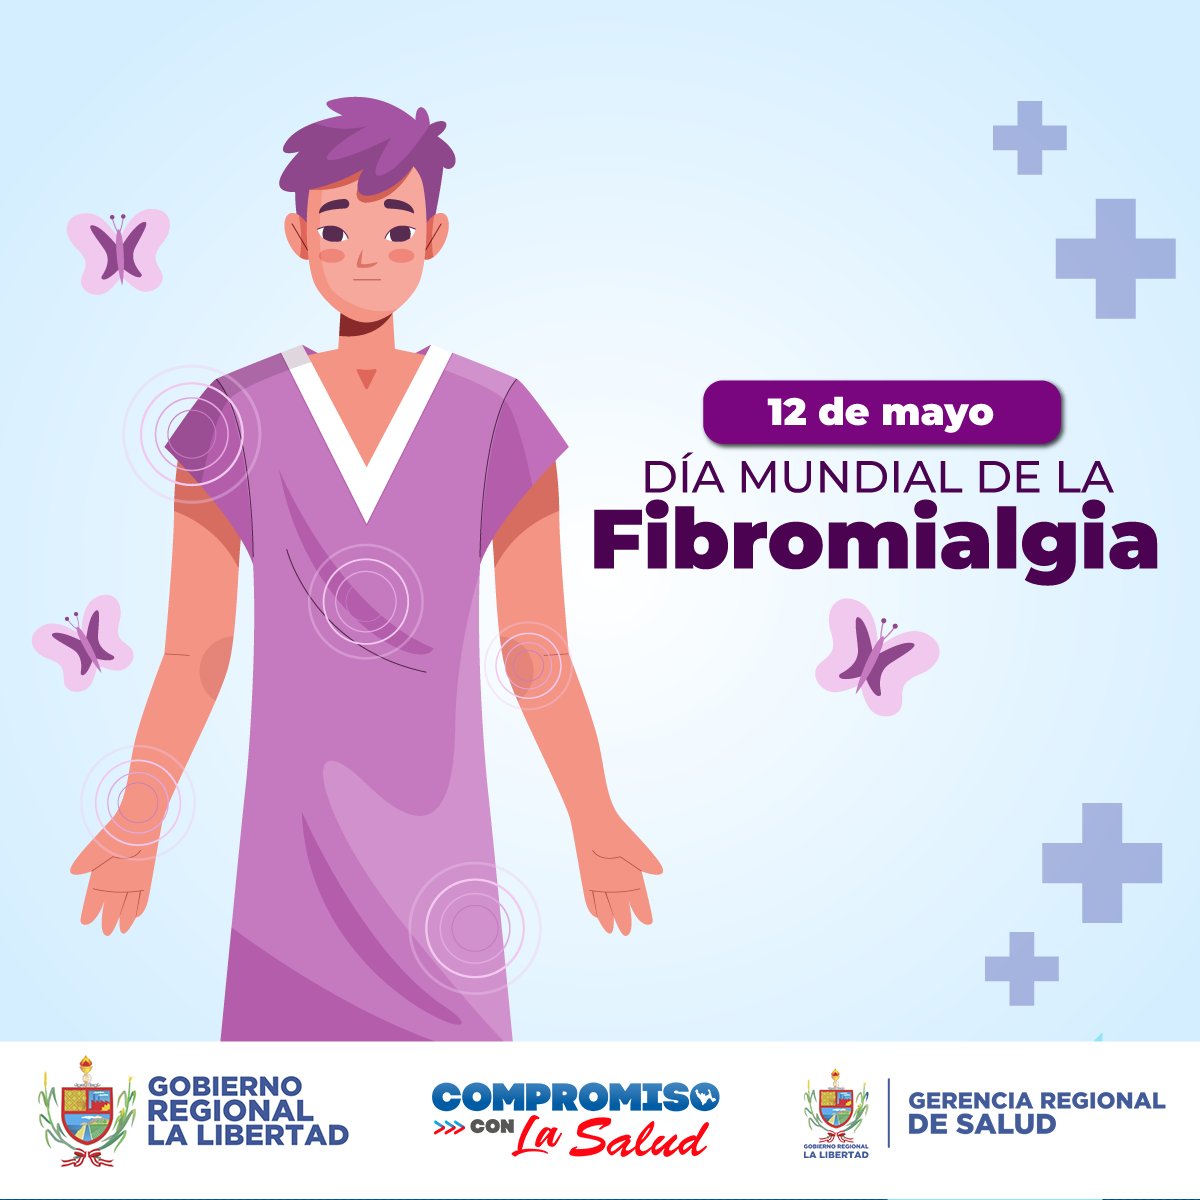 #EFEMÉRIDES | 12 de mayo: Día Mundial de la #Fibromialgia

#CompromisoConLaSalud #CompromisoConLaLibertad